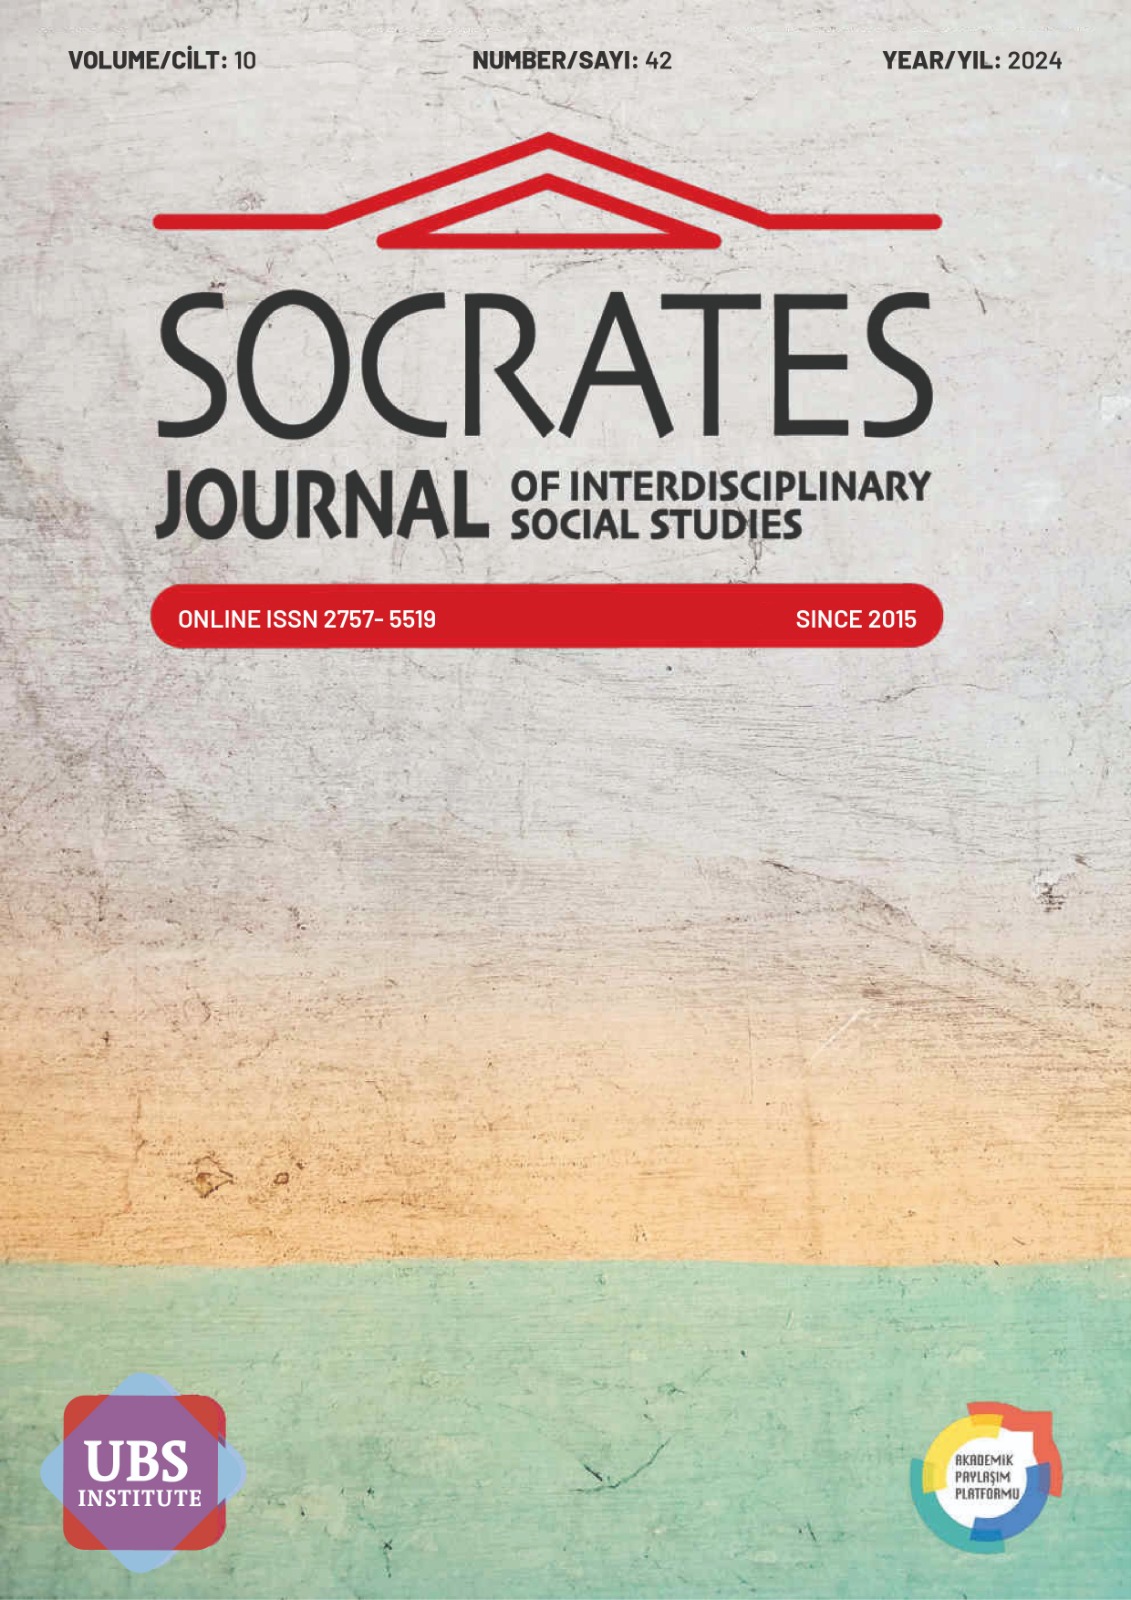 					Cilt 10 Sayı 42 (2024): SOCRATES JOURNAL OF INTERDISCIPLINARY SOCIAL STUDIES (ERKEN GÖRÜNÜM) Gör
				